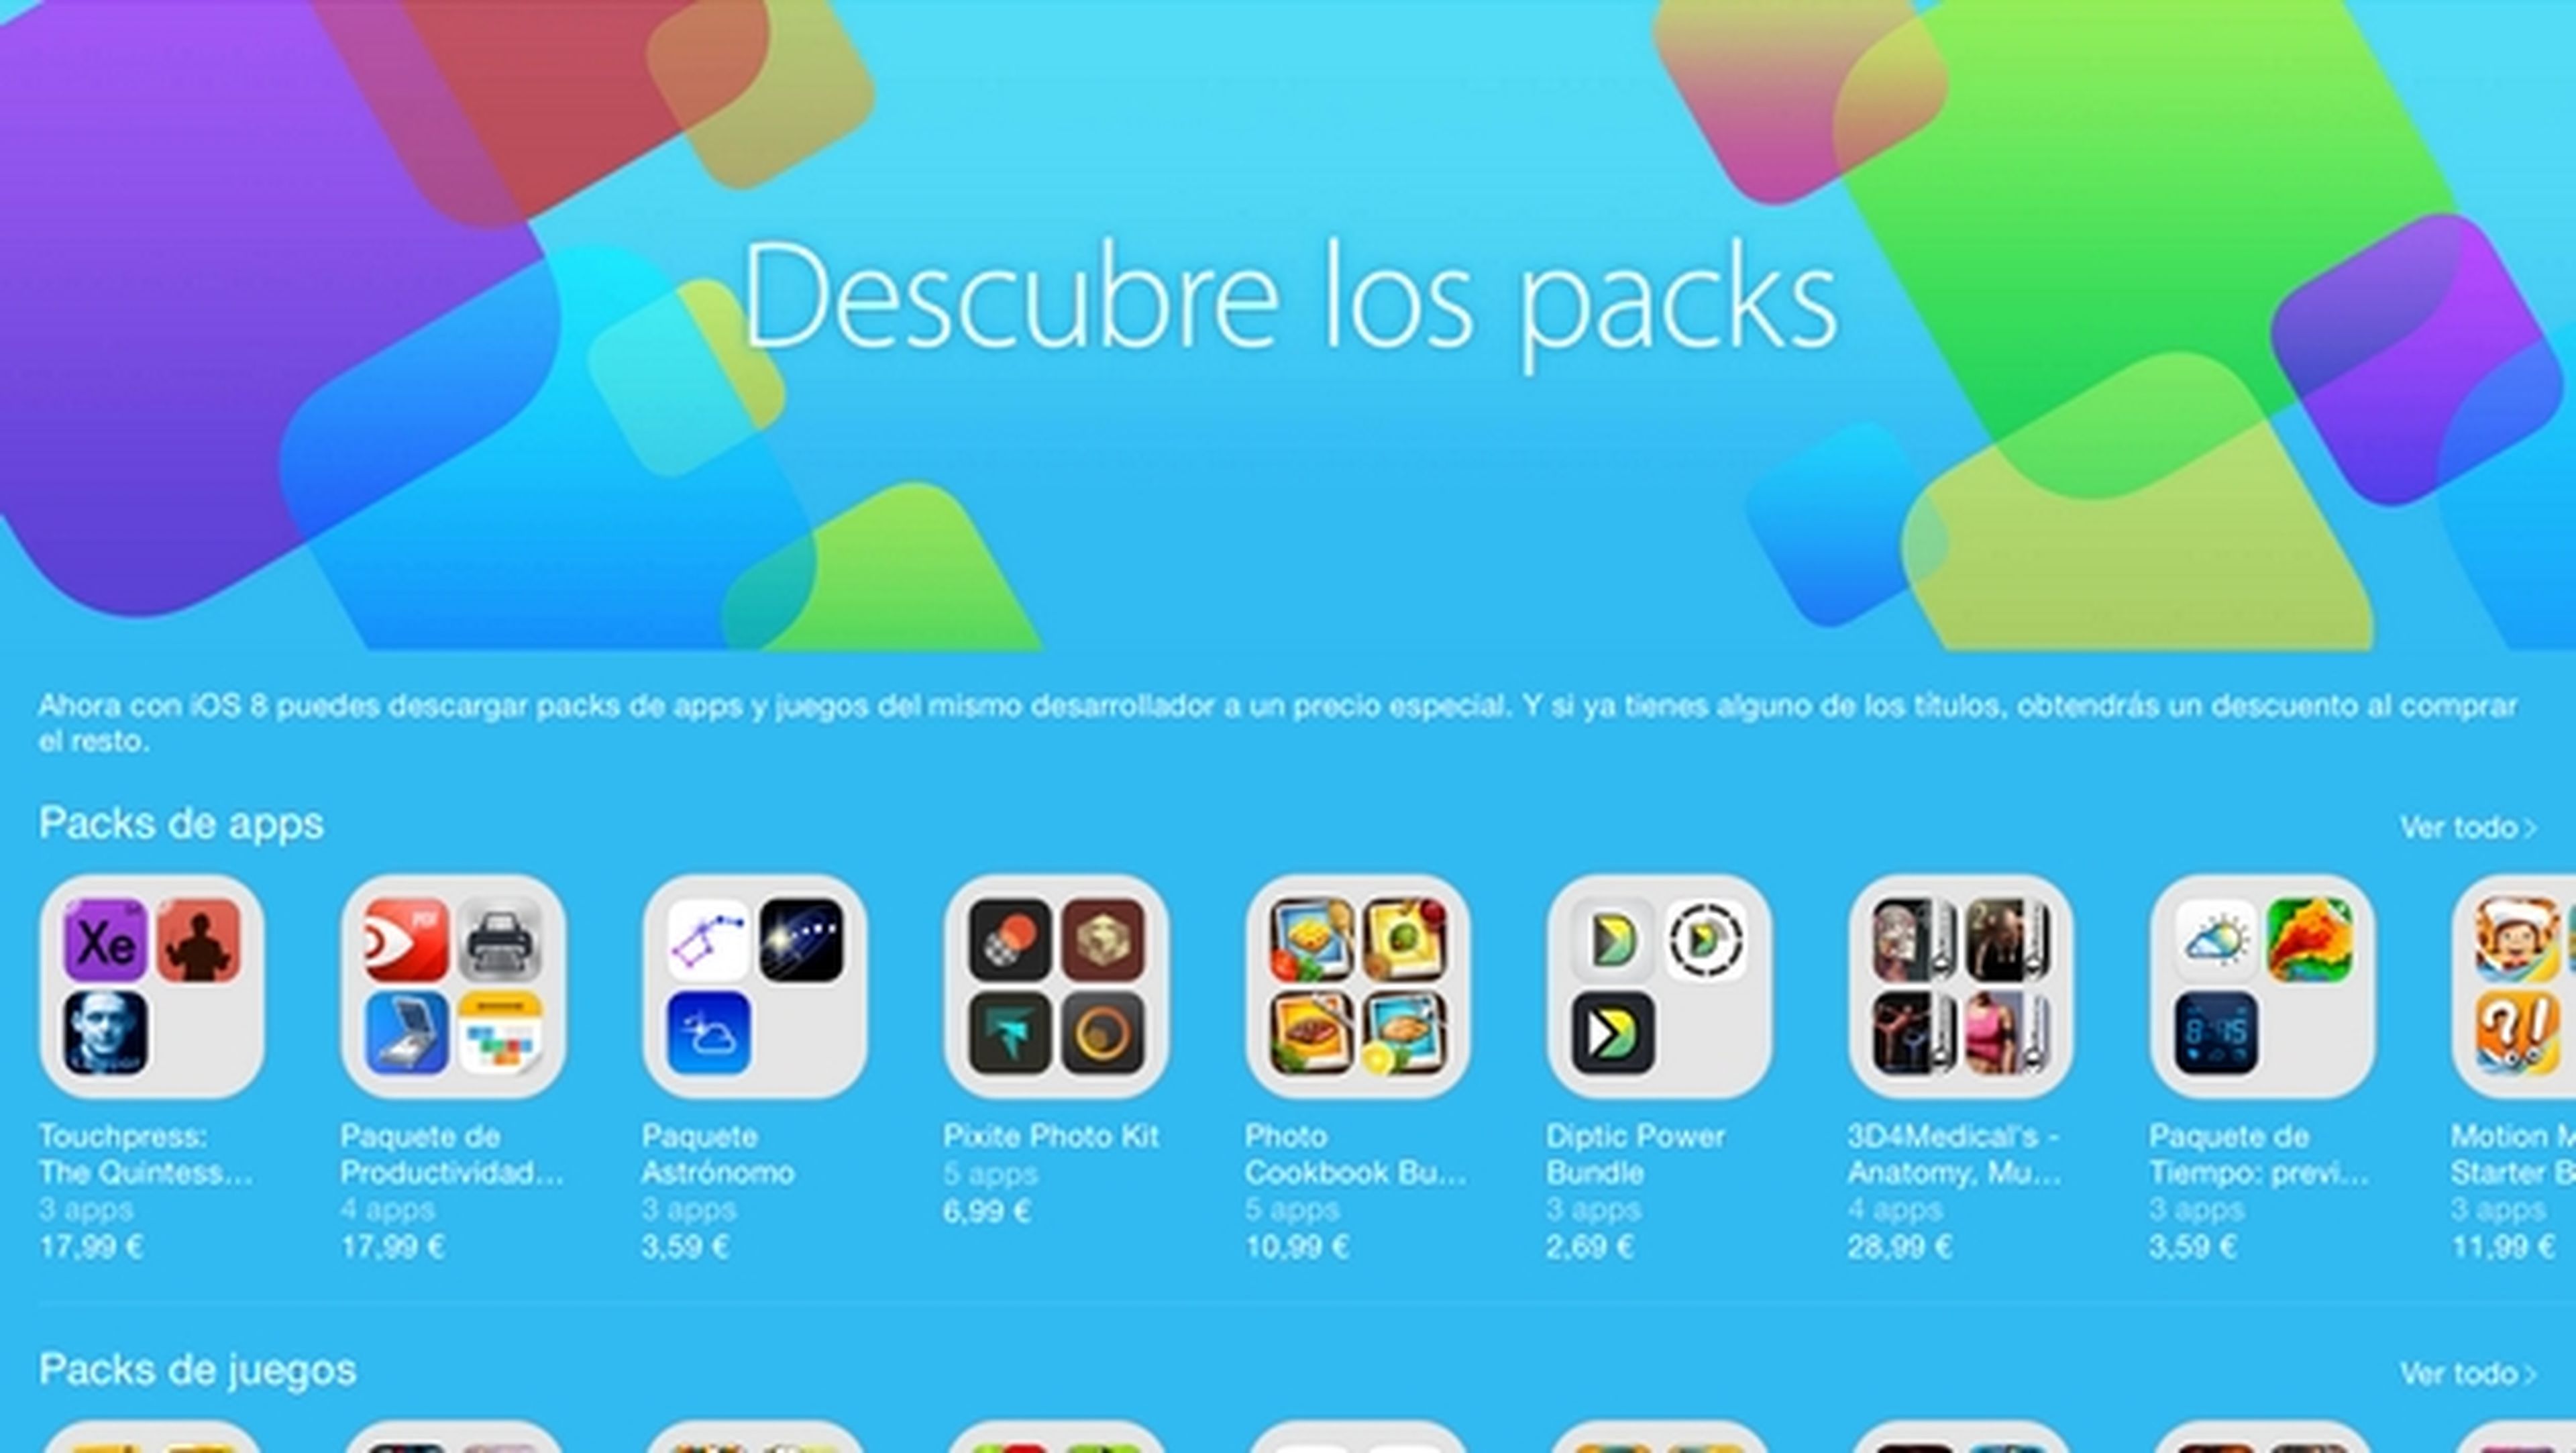 App Store estrena packs de apps con iOS 8. ¿Merecen la pena?